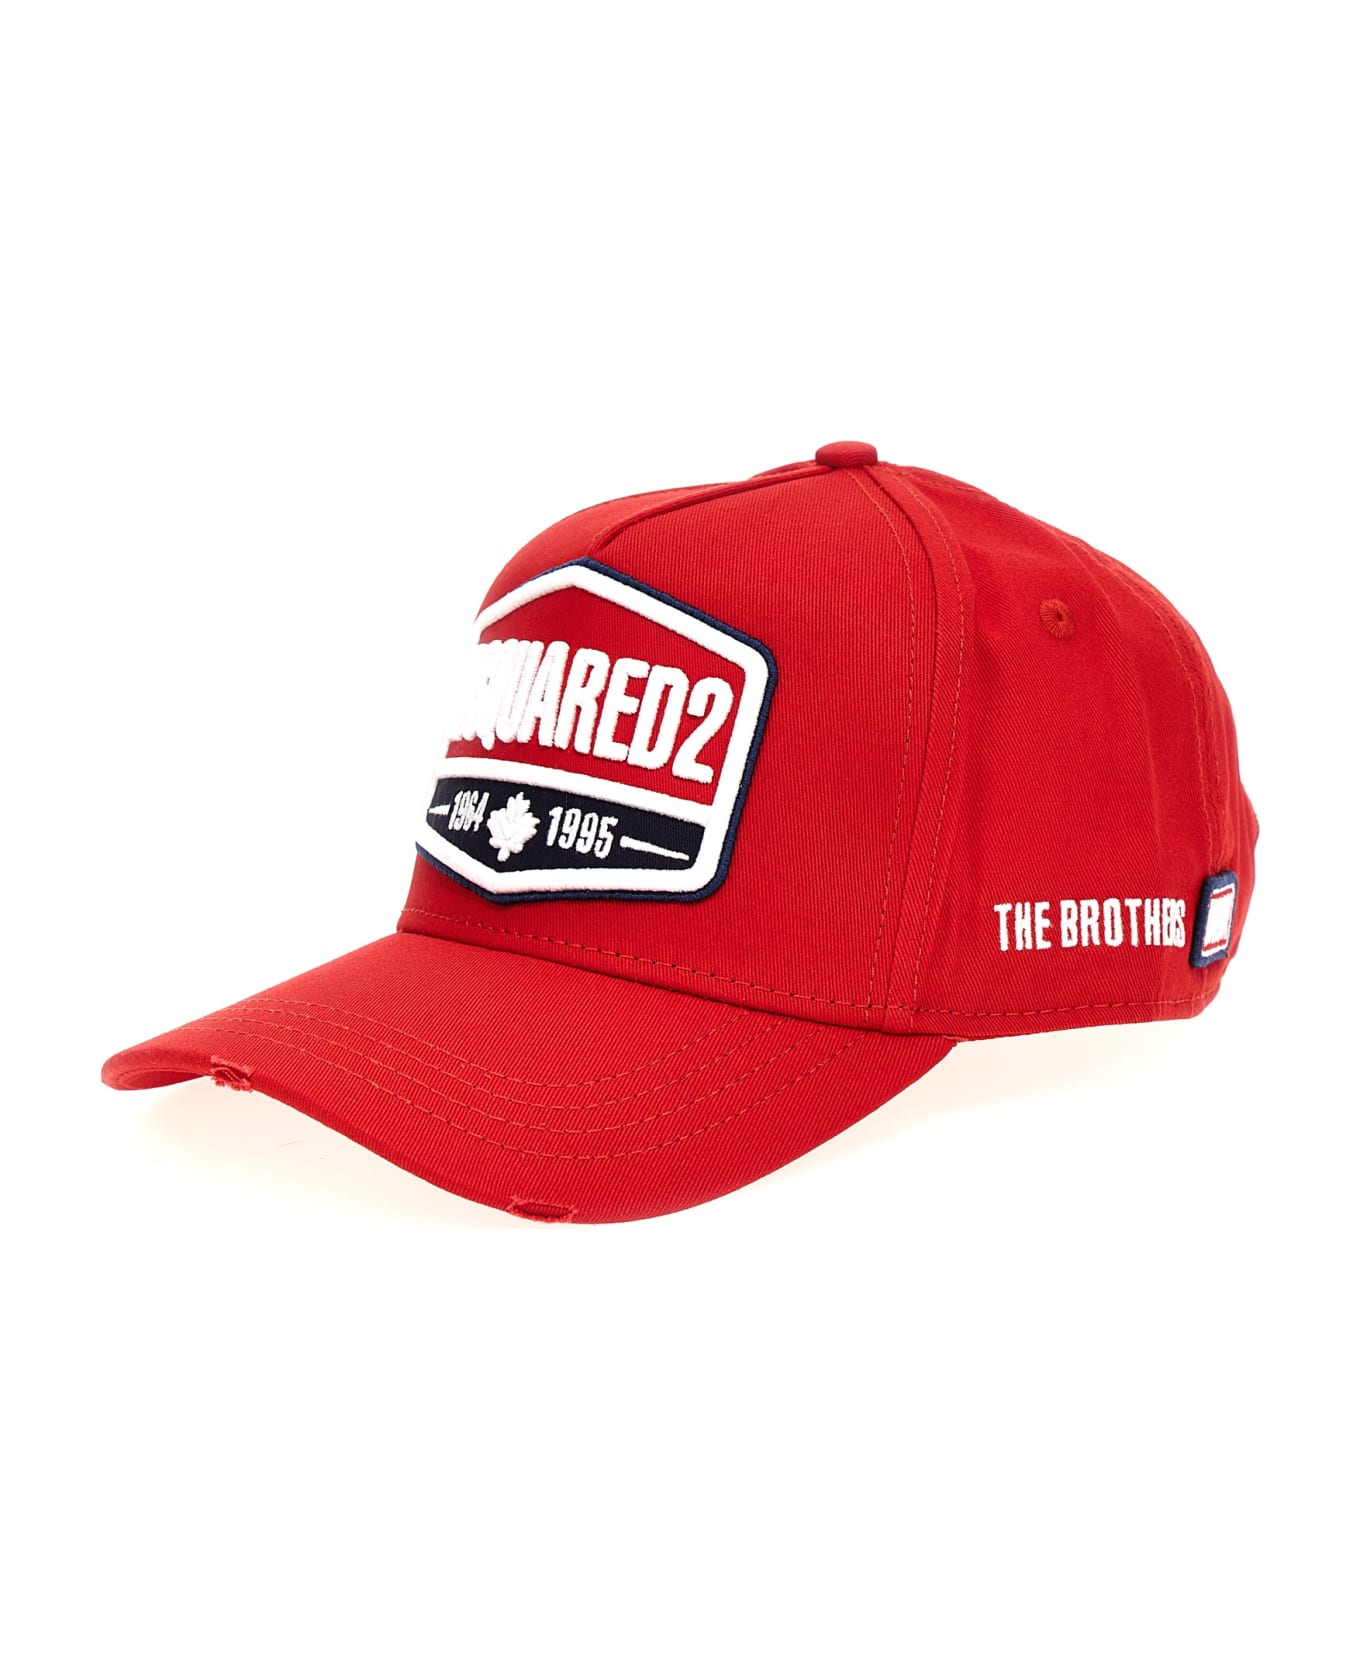 Dsquared2 Logo Cap - Rosso 帽子